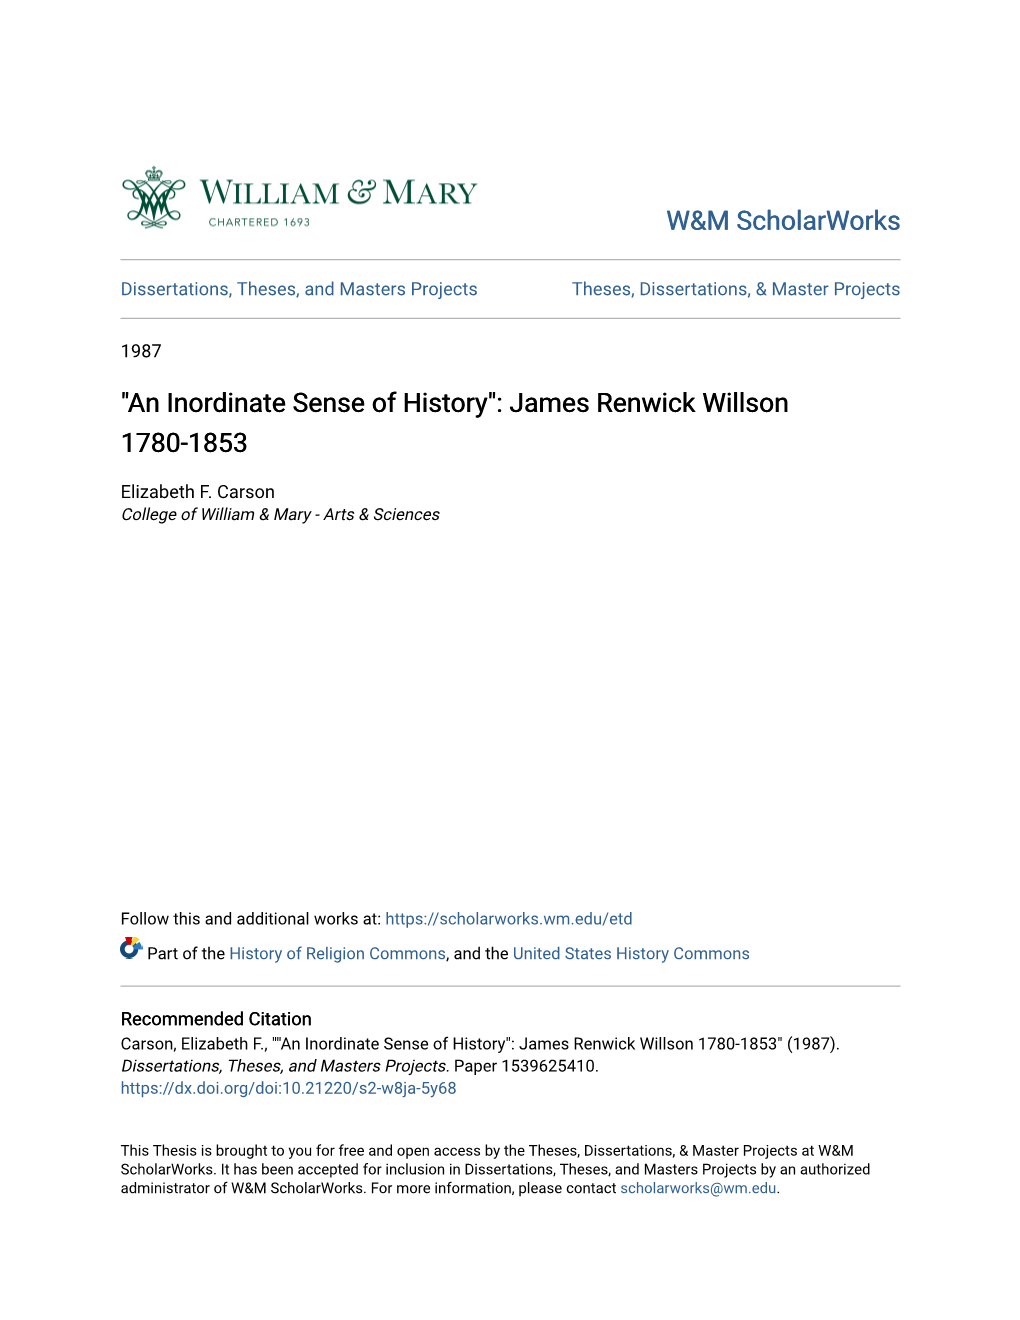 James Renwick Willson 1780-1853